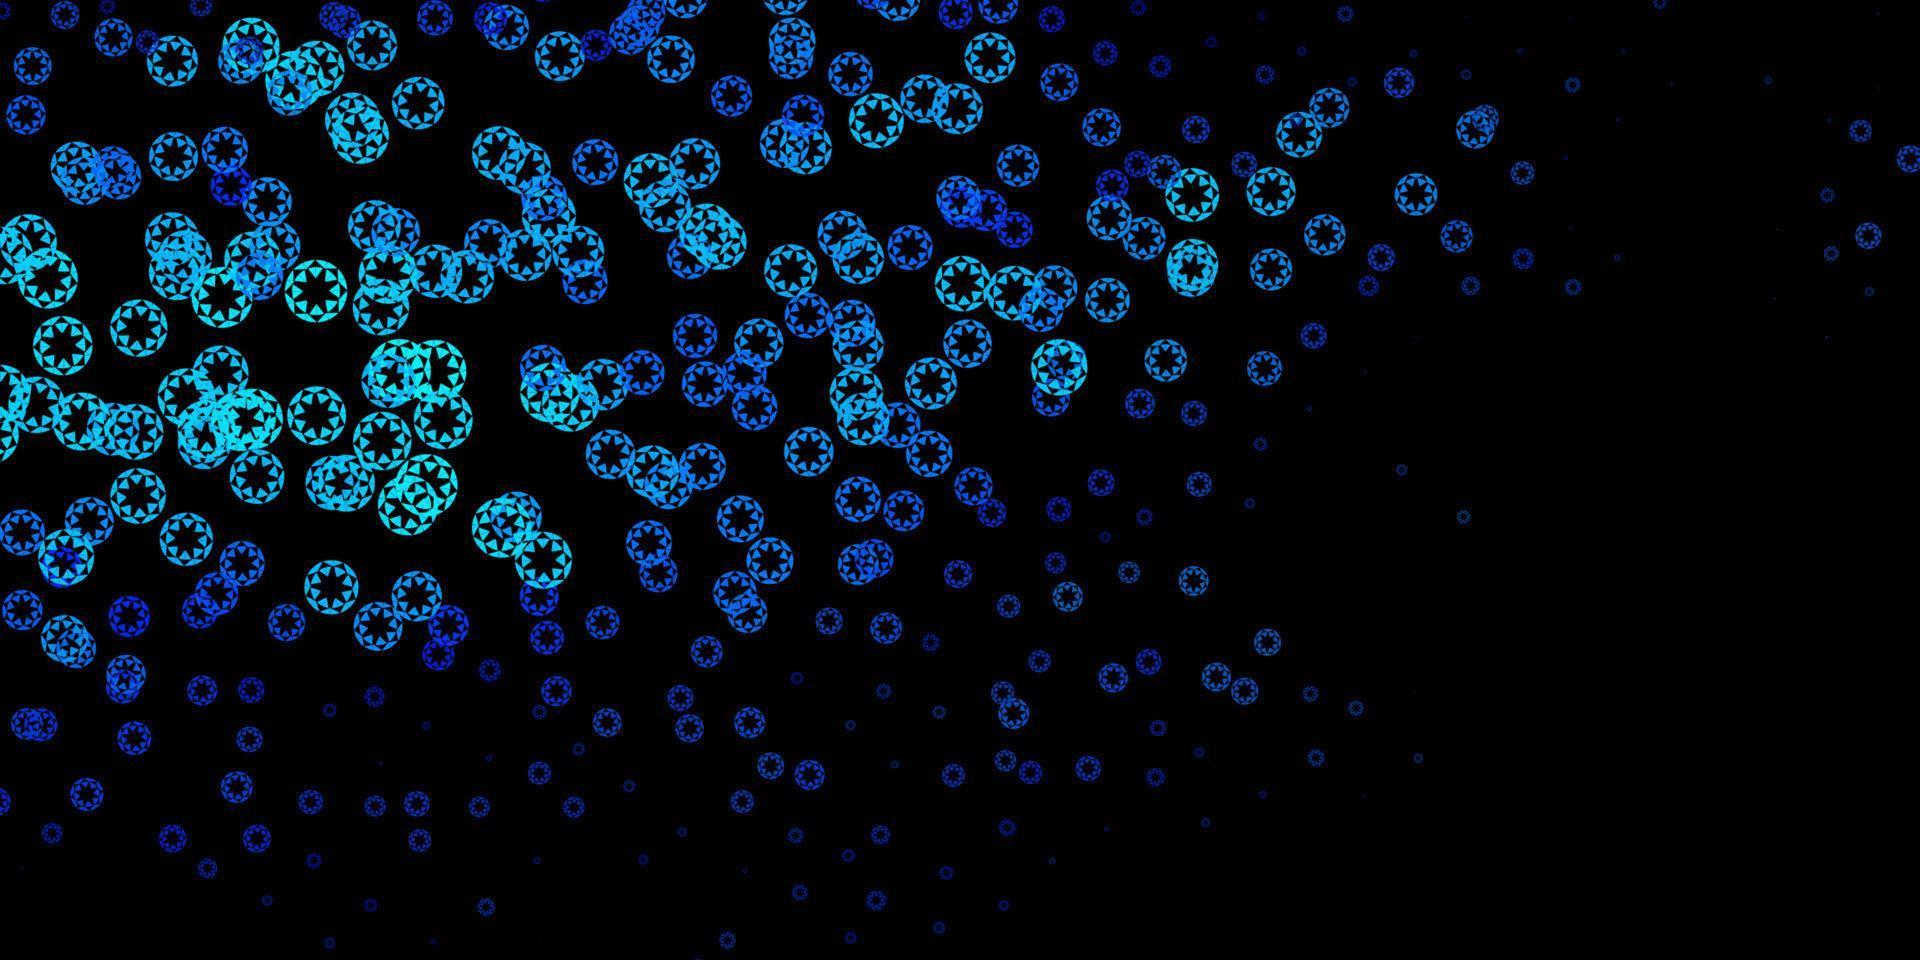 pano de fundo vector azul escuro com pontos.